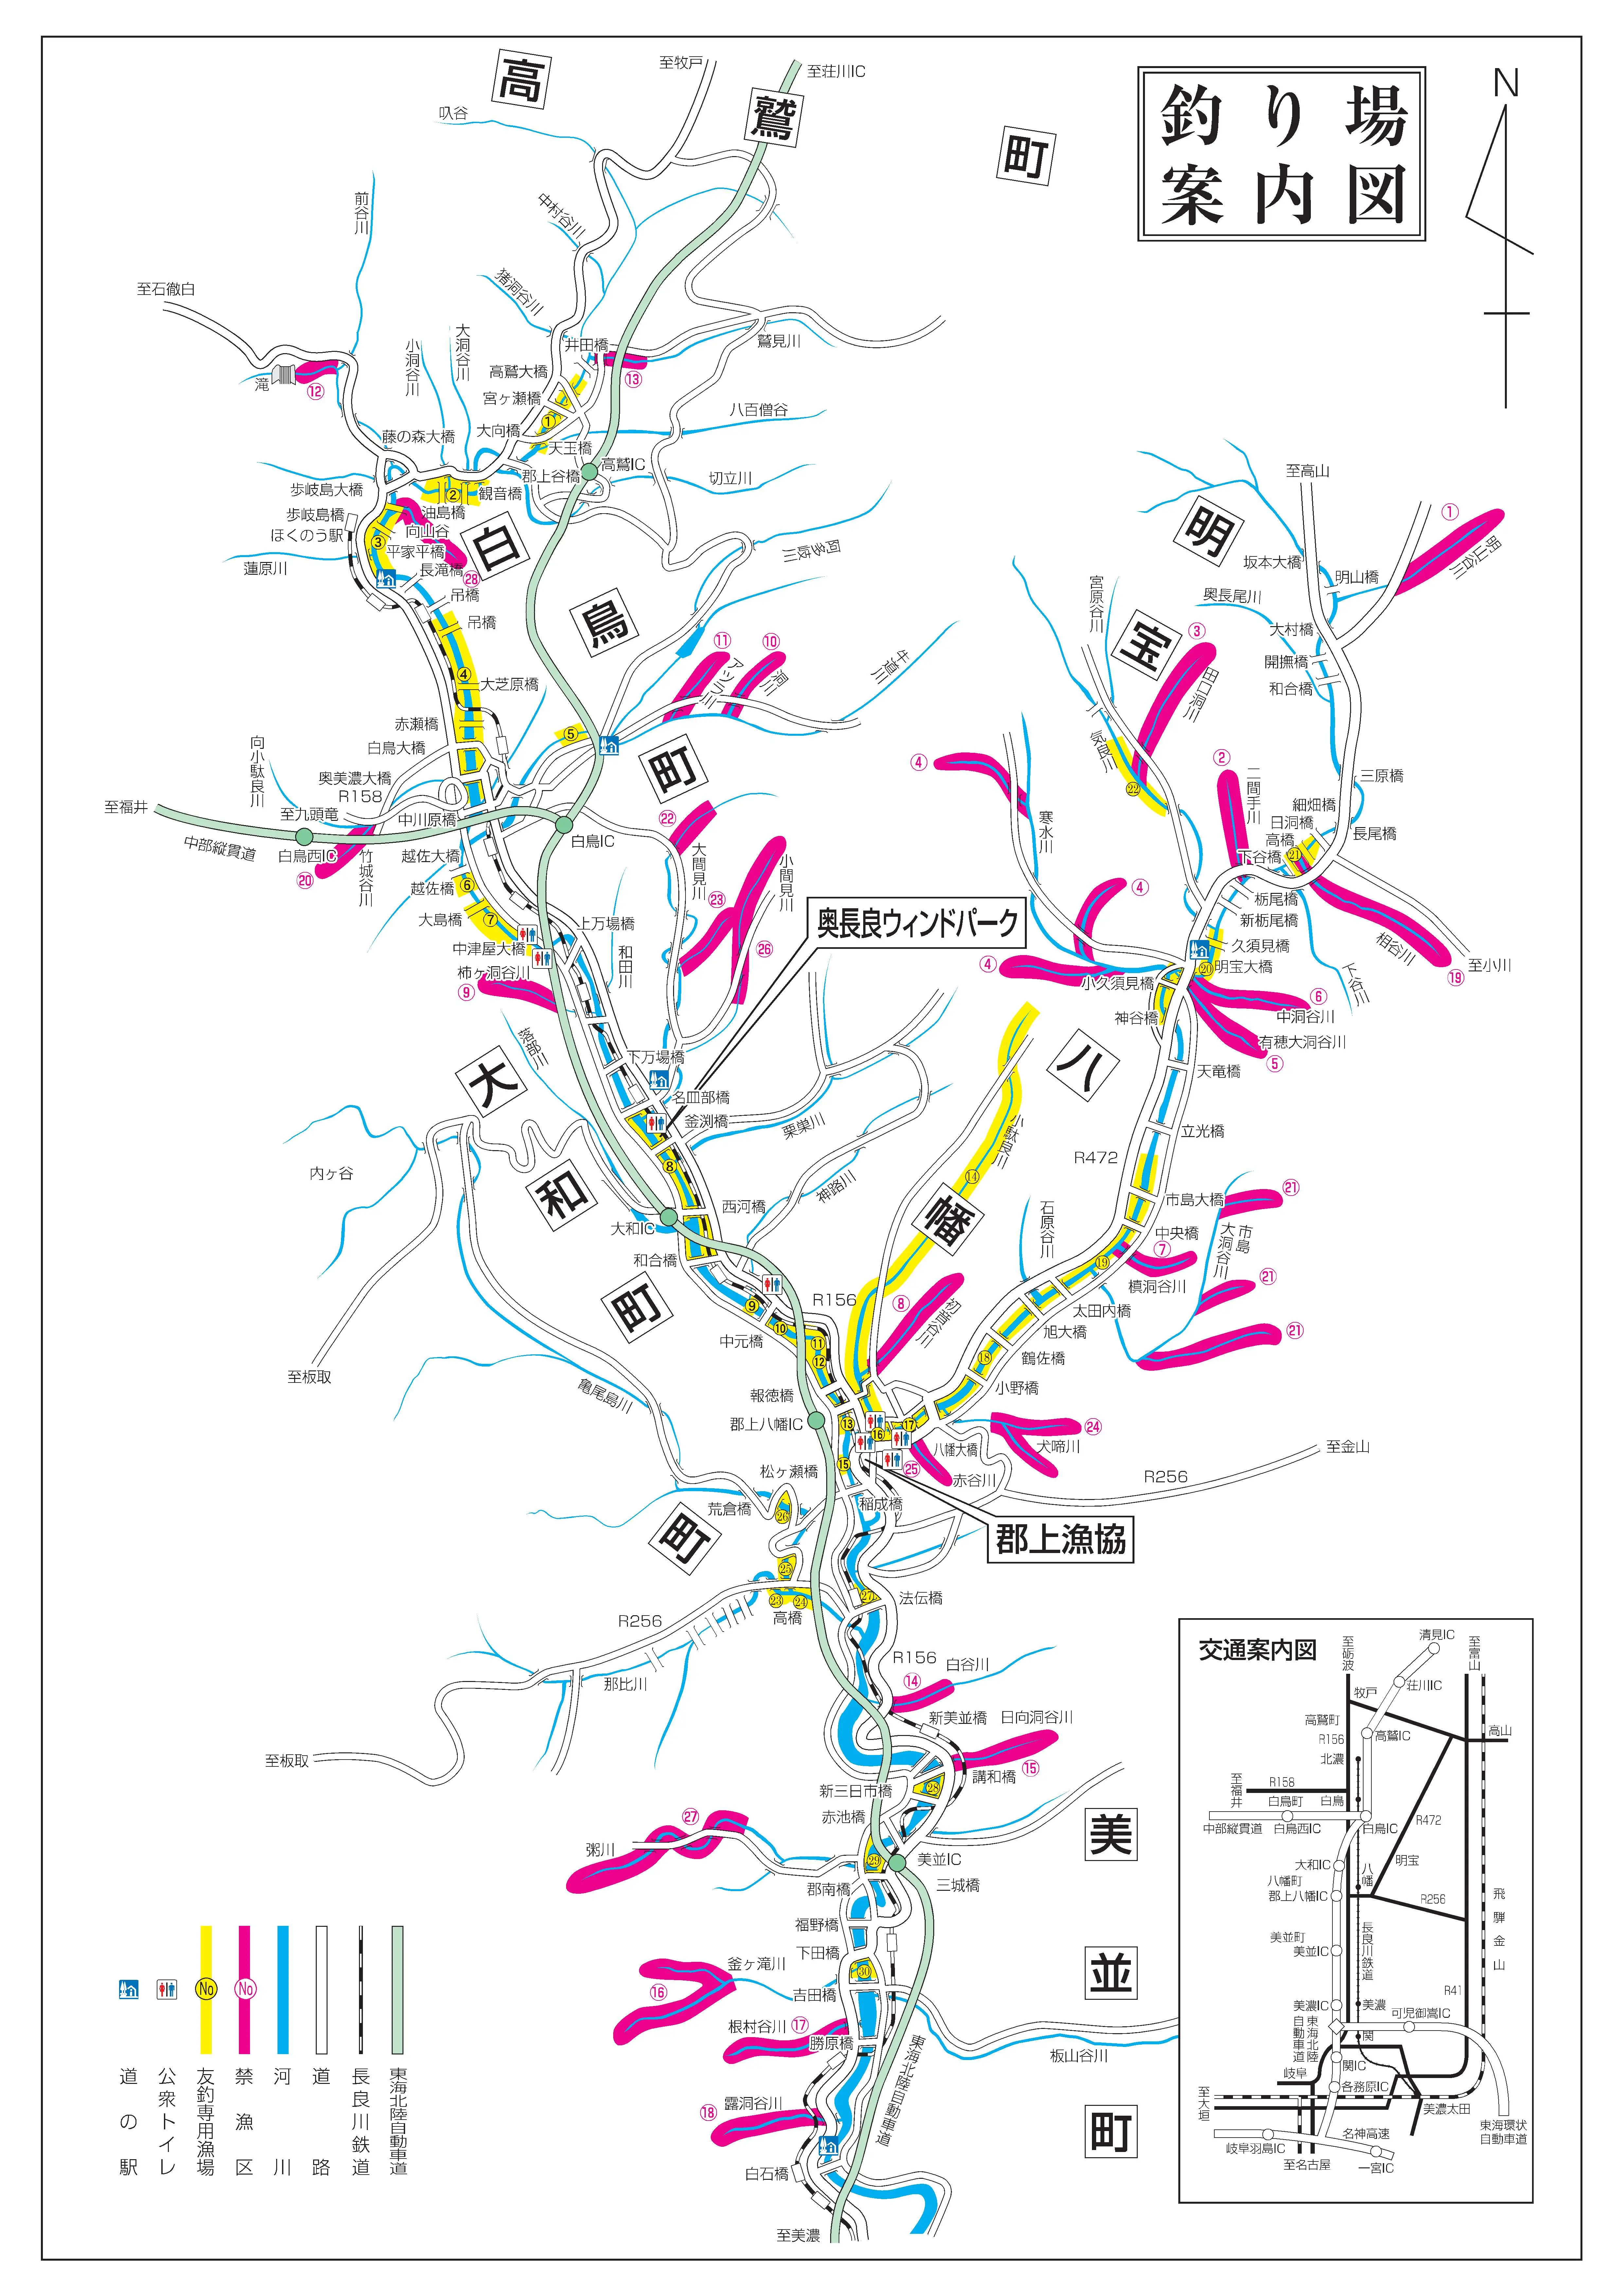 郡上の渓流釣りの地図はこちら 鮎 あまご イワナ ヤマメ 釣り初心者をお手伝いするブログ へらぶな 渓流ルアー テンカラ